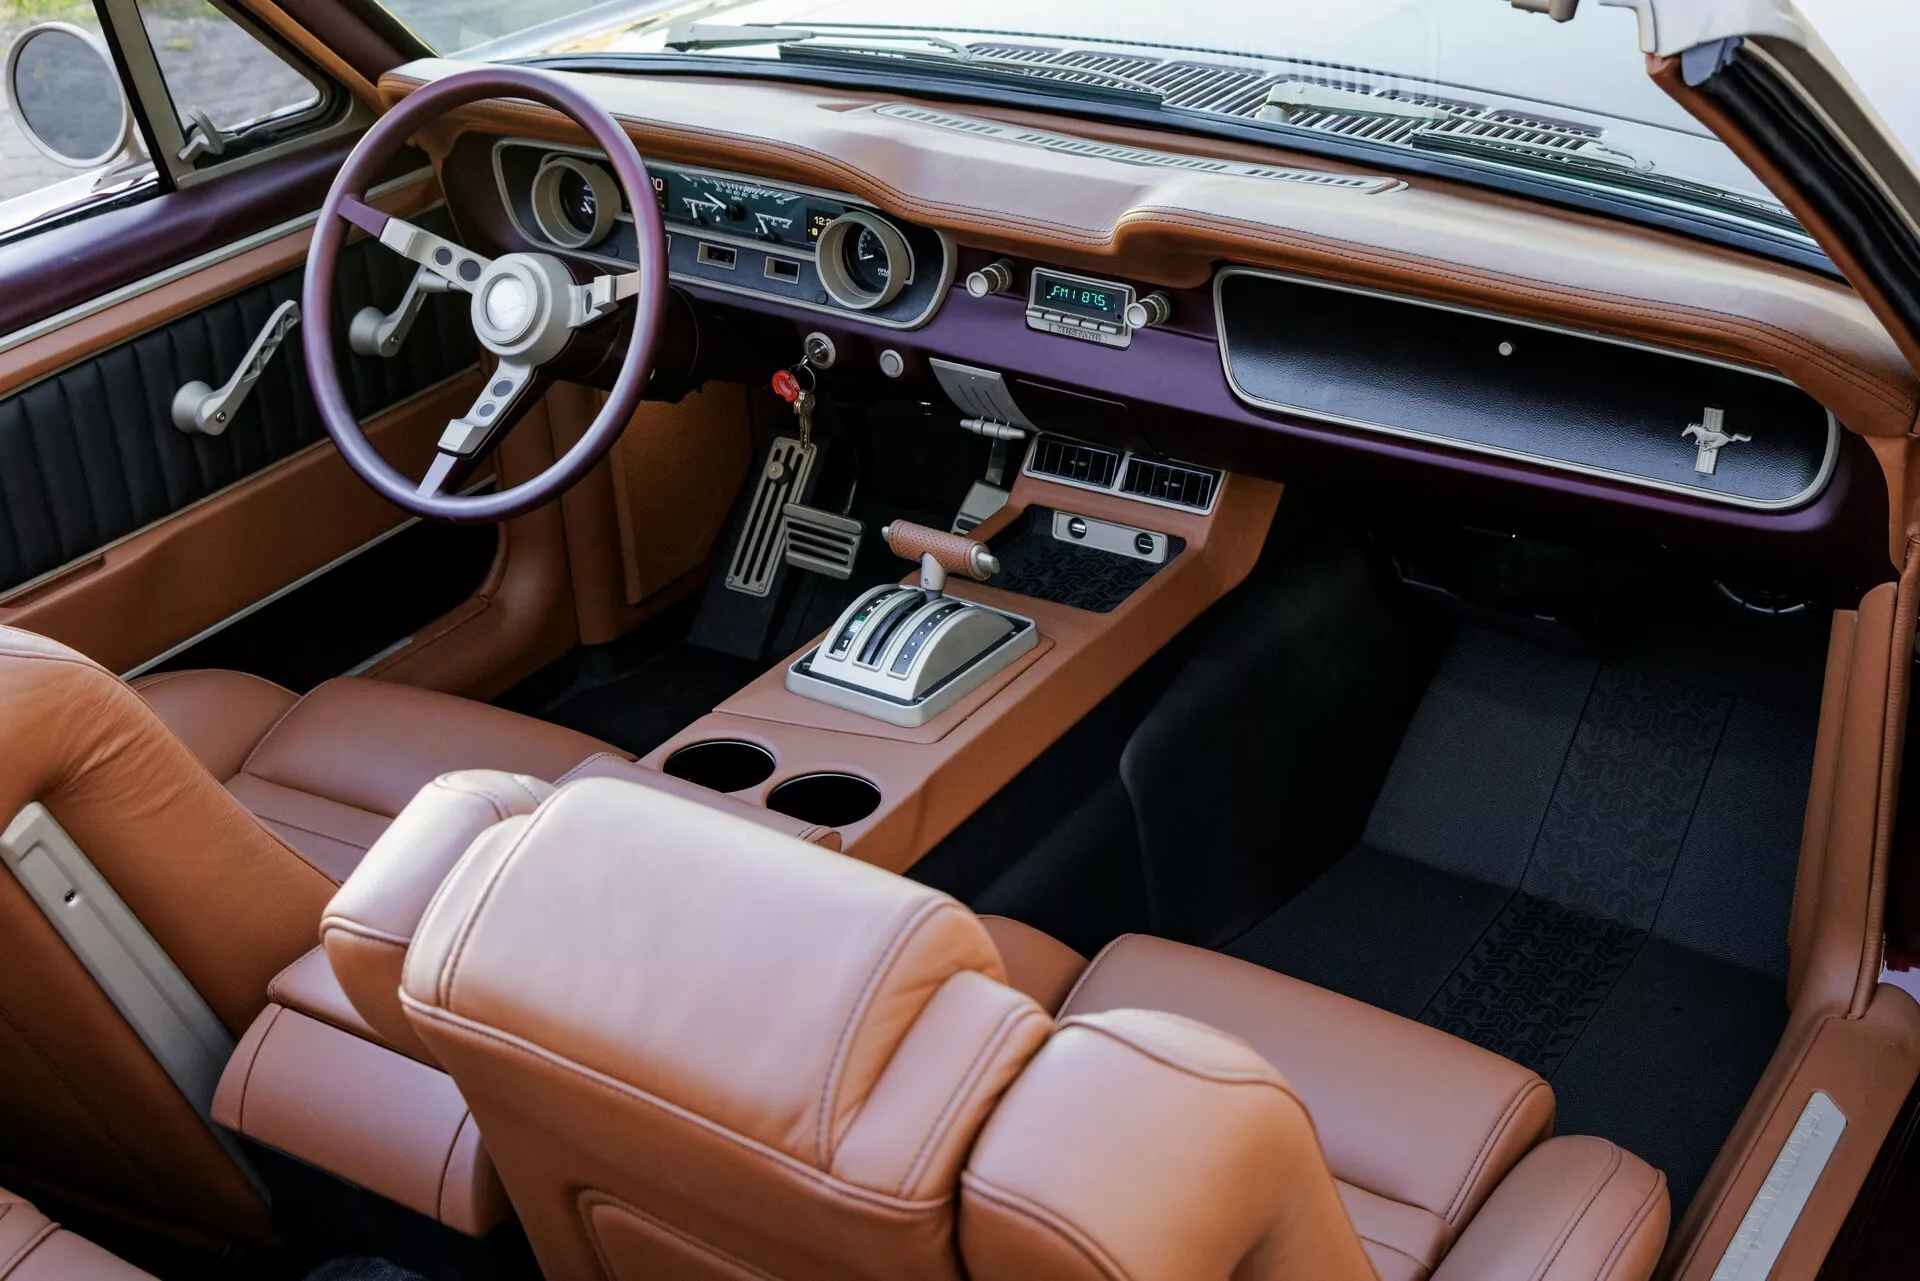 تدشين واحدة من أجمل سيارات فورد موستنج الكلاسيكية في معرض سيما الأمريكي بمحرك 8 سلندر عصري 4